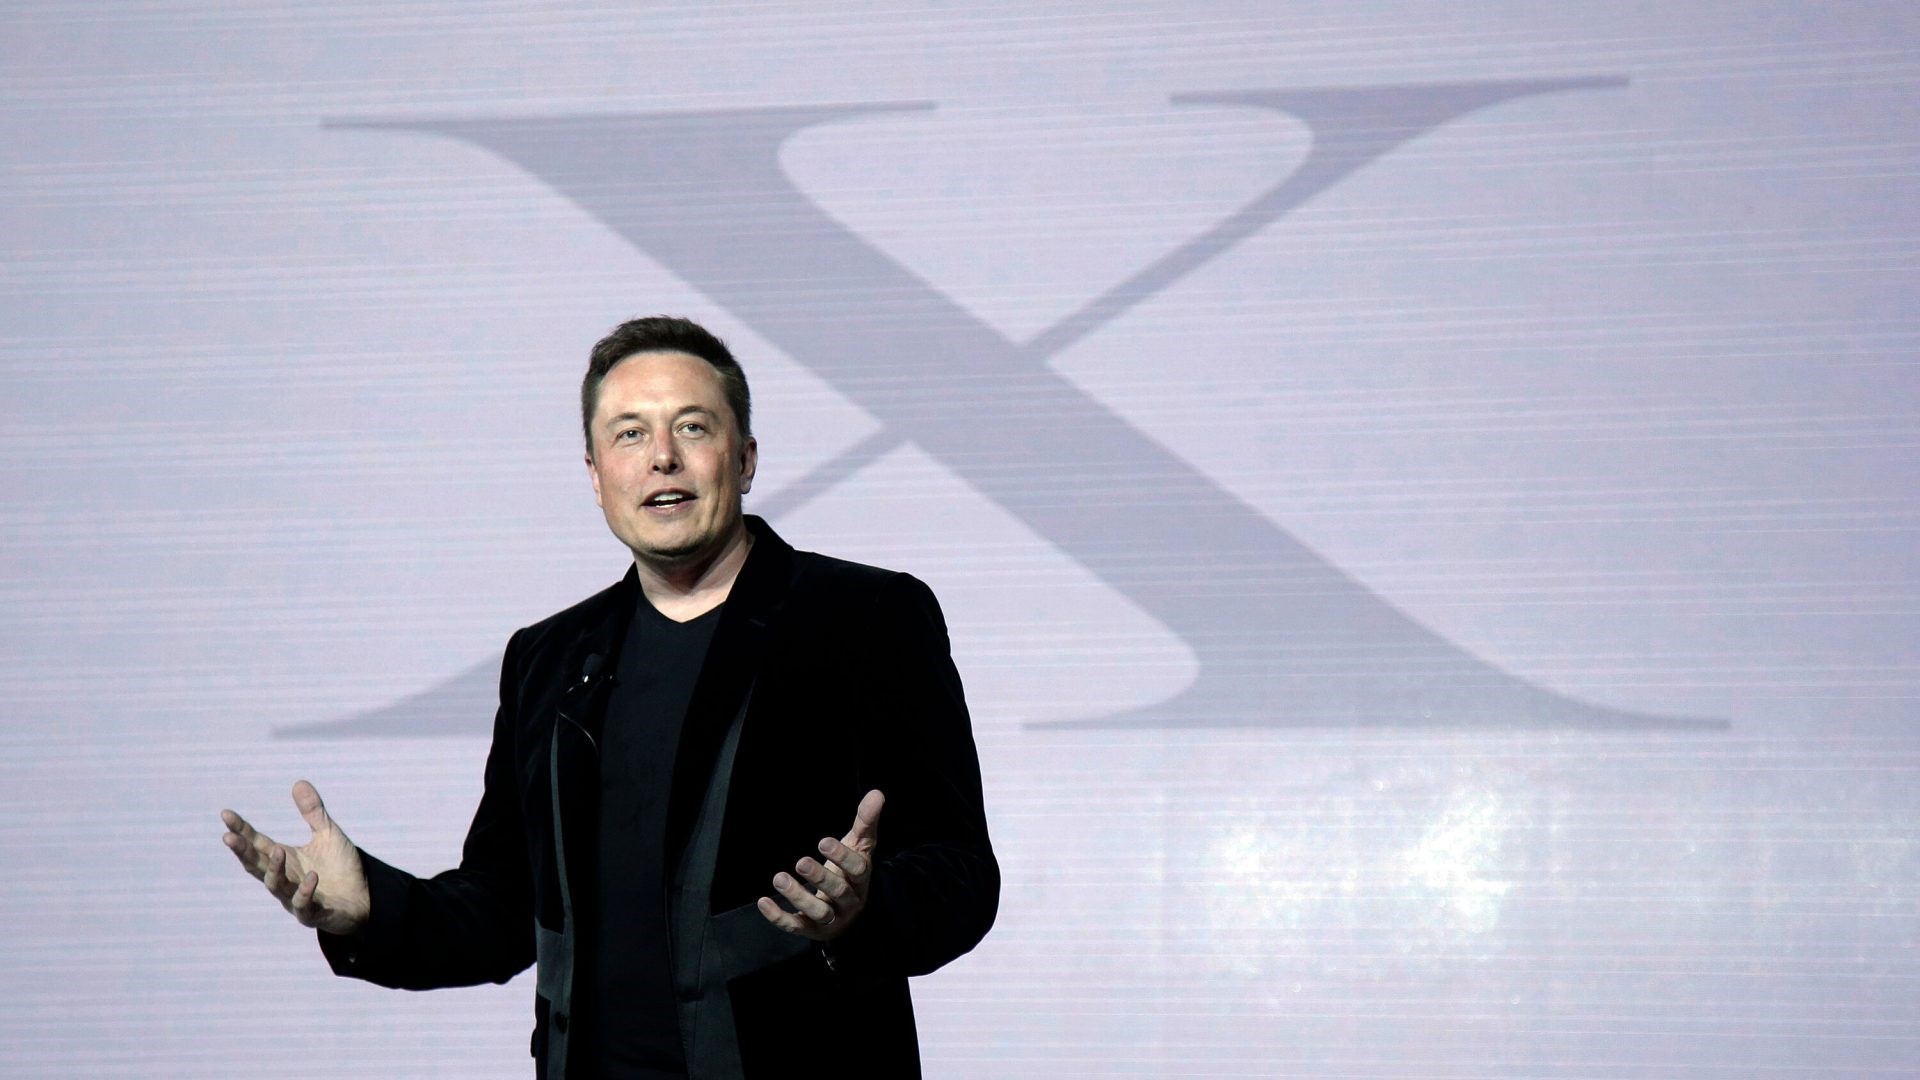 Bu da oldu: Elon Musk kendi yapay zekâ şirketini kurdu!